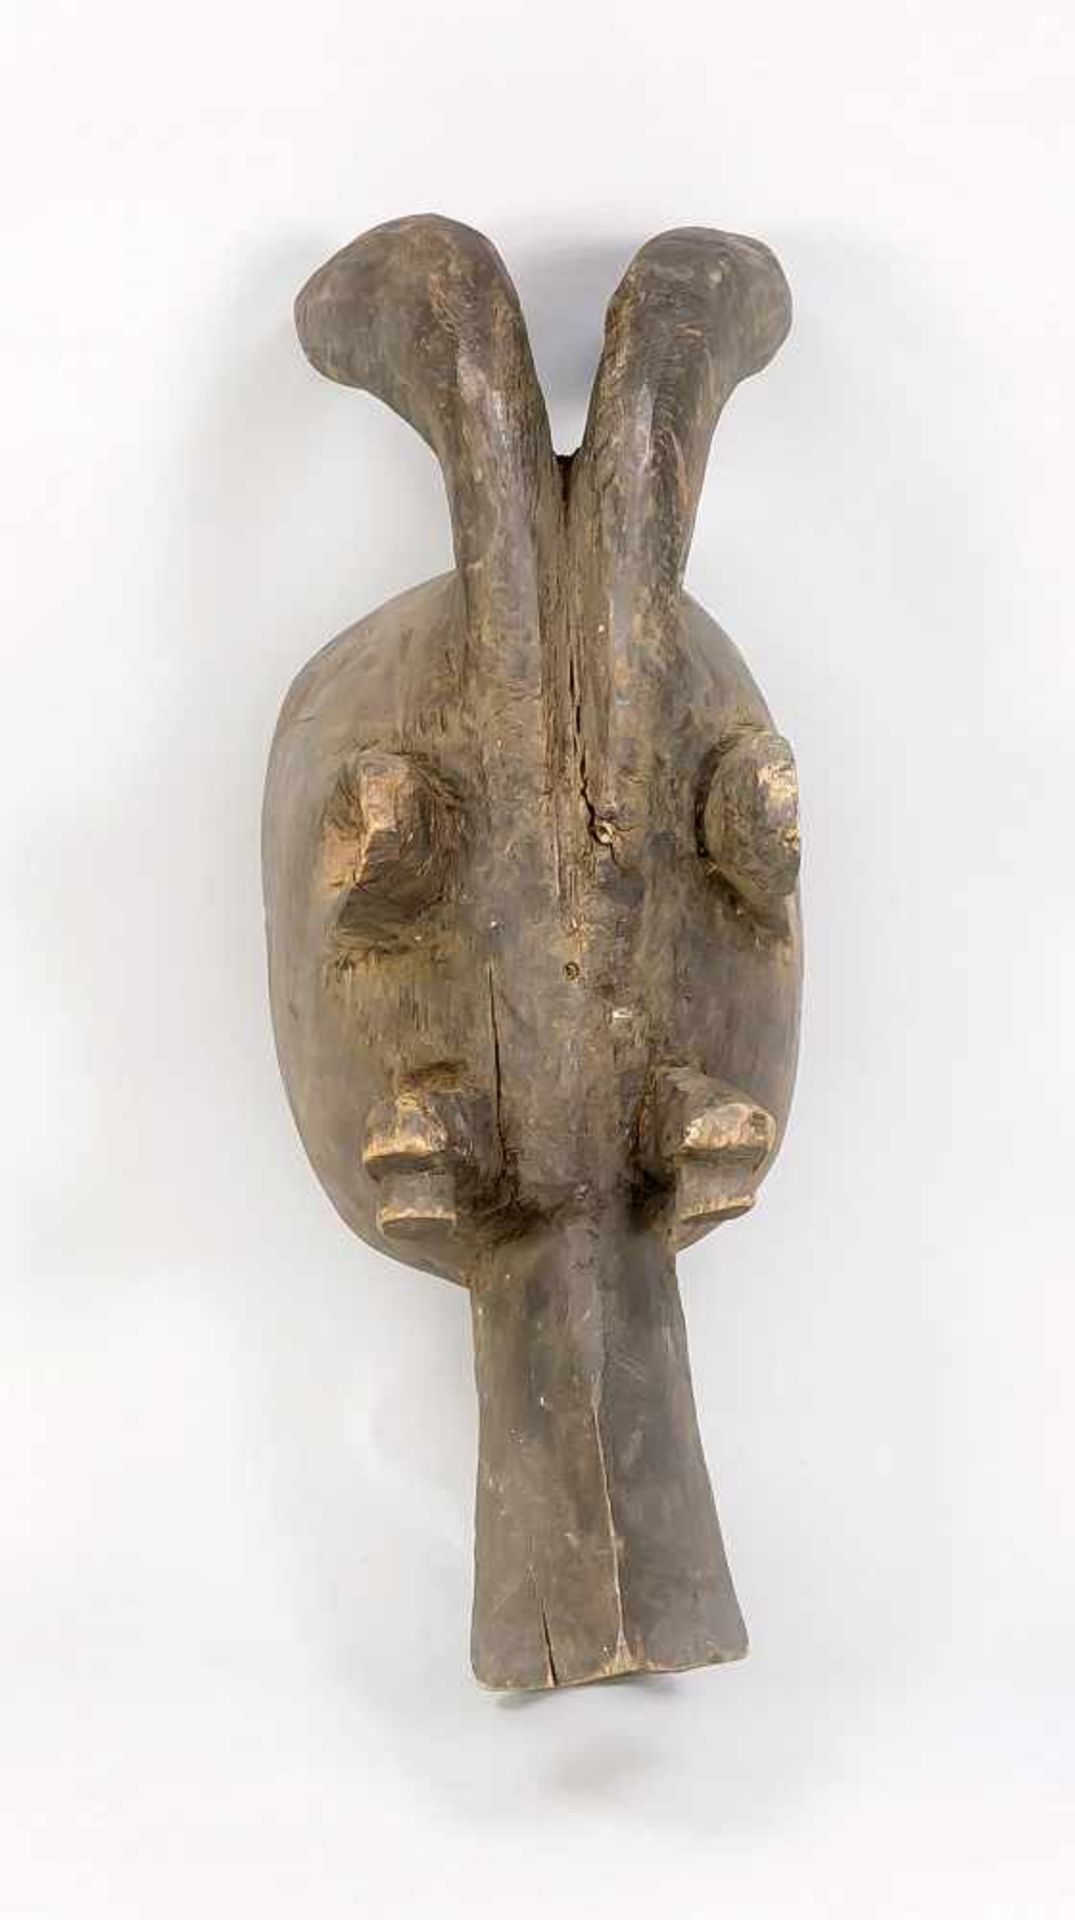 Kopfmaske der Mambila/Kamerun? Holz mit gedunkelter Oberfläche. Schnabel (Maul), Augen,Ohren und